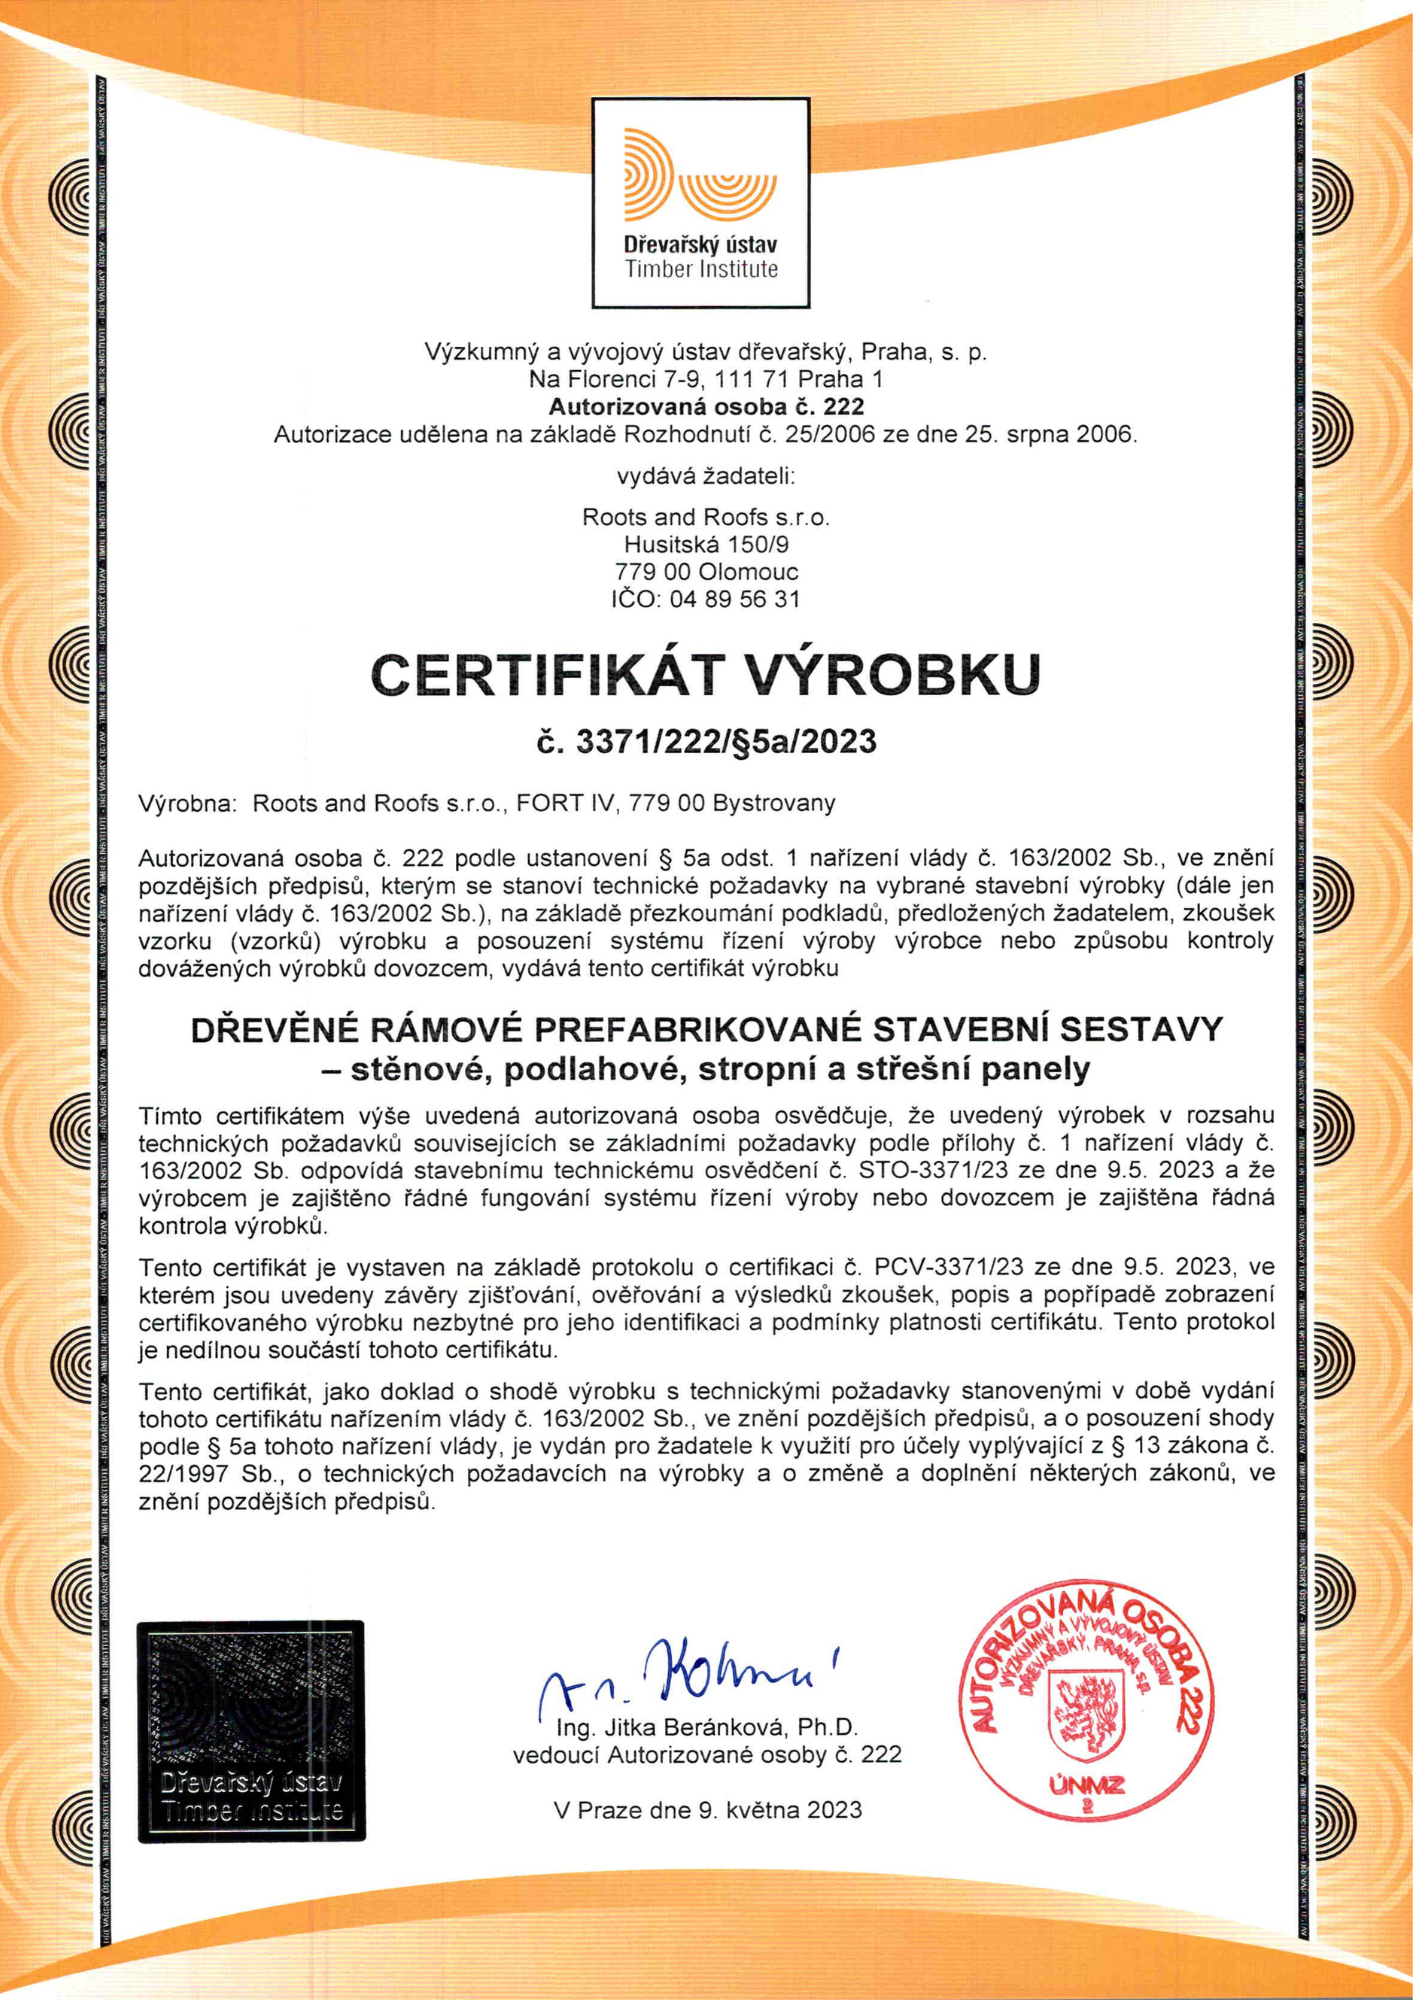 Certifikat-stavebni-sestavy-drevostavby